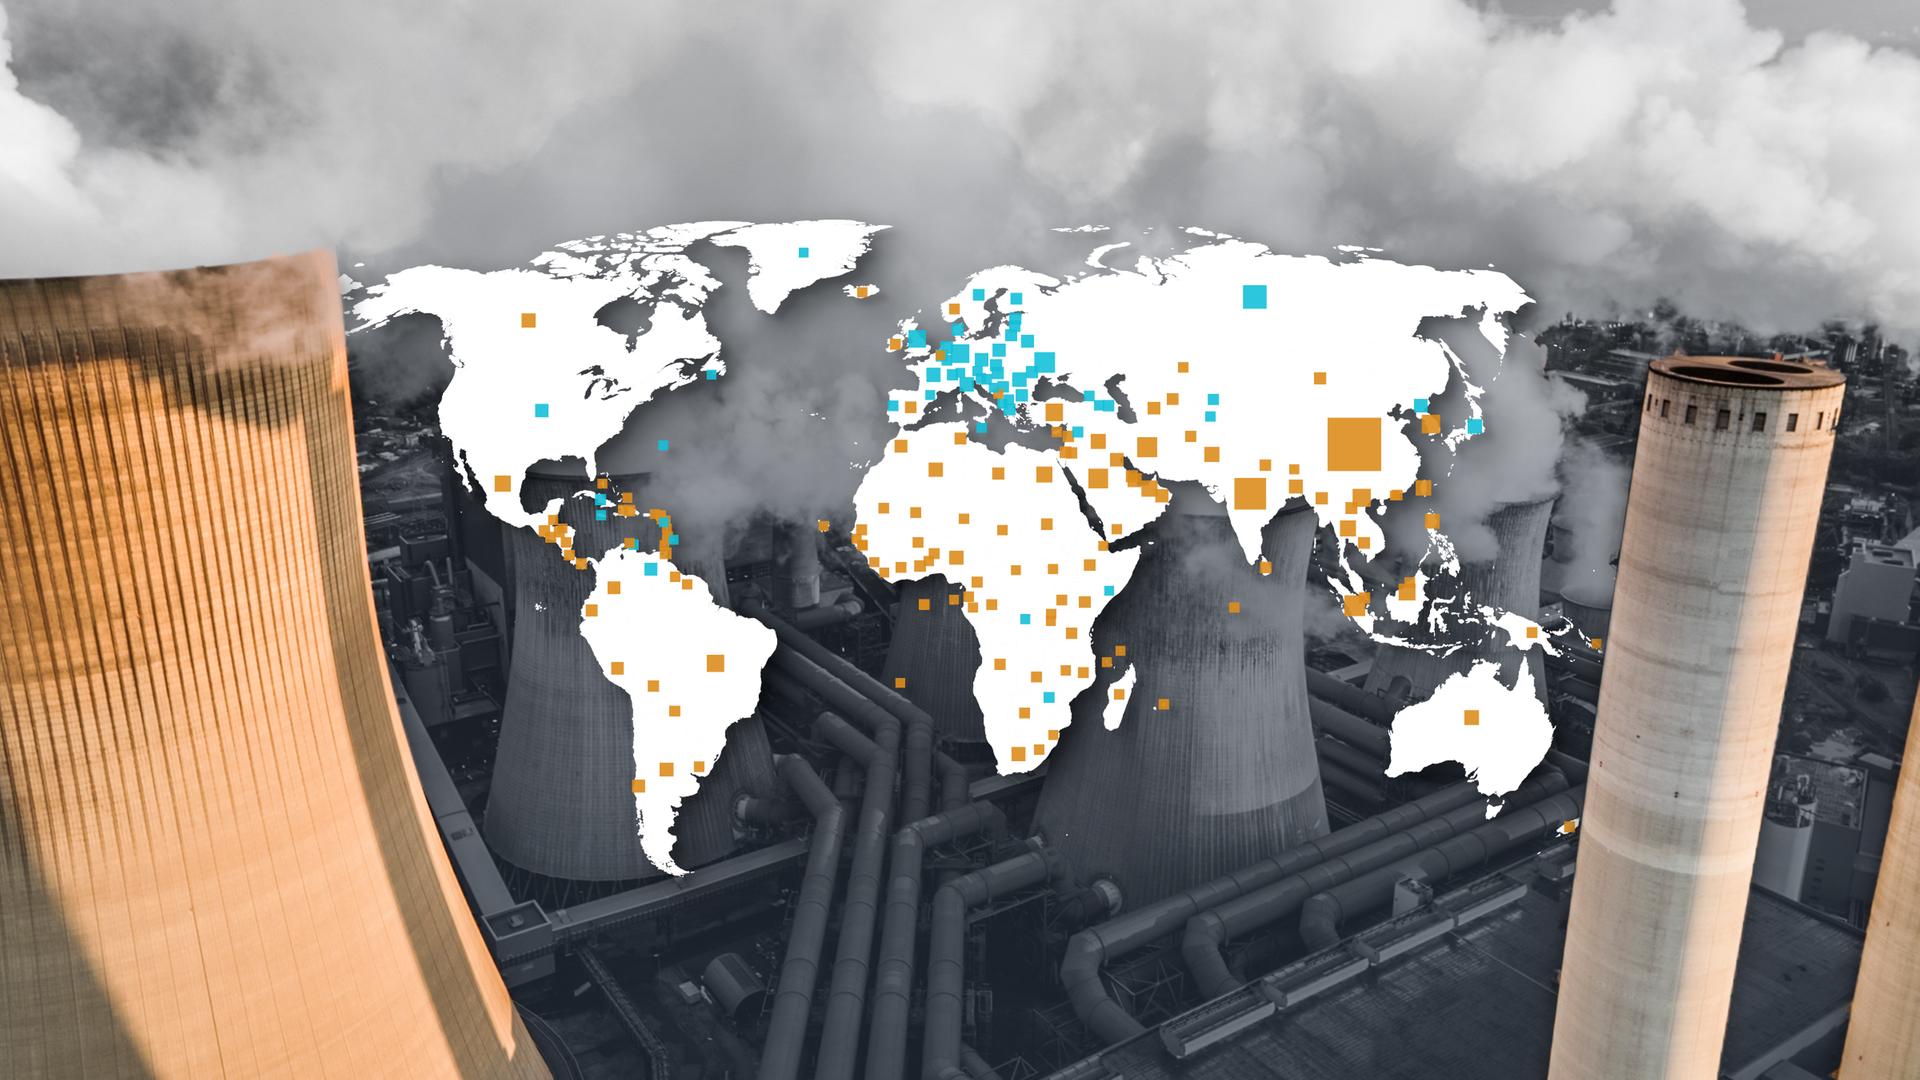 Weltkarte mit dem CO2-Ausstoß der Länder vor einer Windkraftanlage und einem Kohlekraftwerk